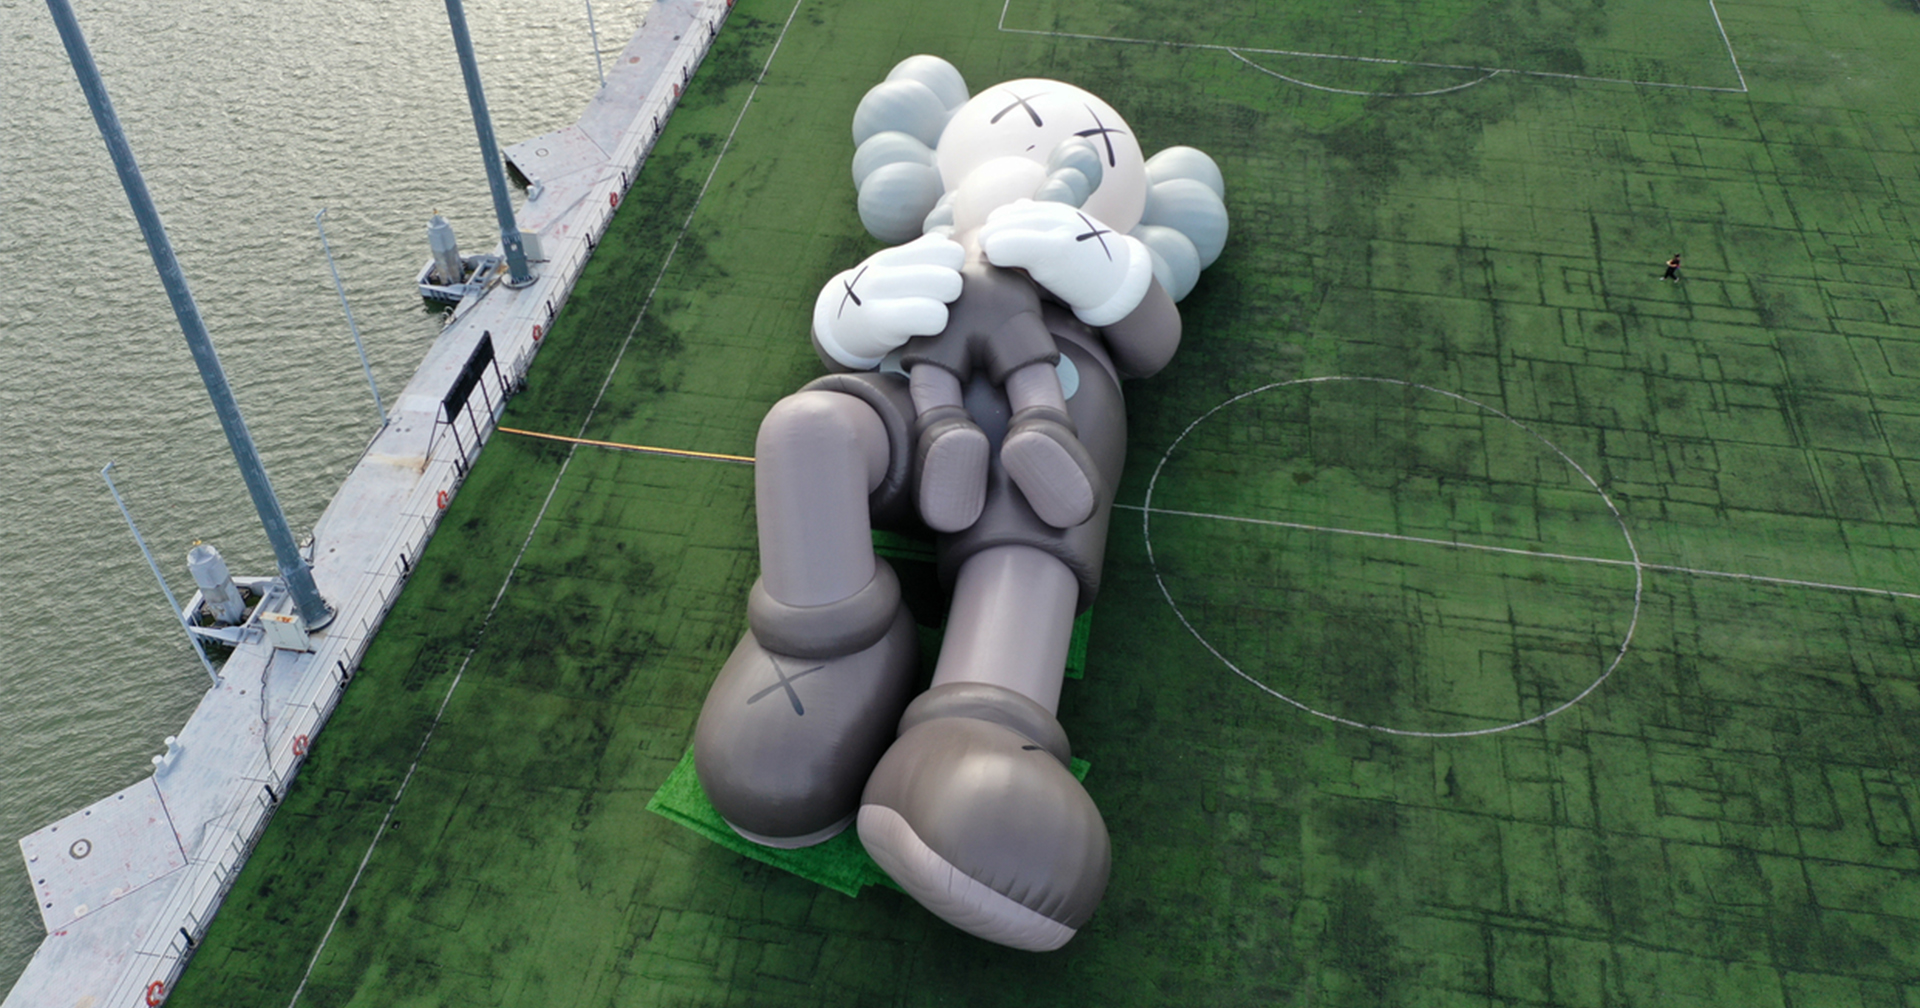 เมื่อ ‘KAWS: HOLIDAY’ ตุ๊กตายักษ์ จากศิลปินระดับโลก ถูกจัดแสดงริมแม่น้ำในสิงคโปร์